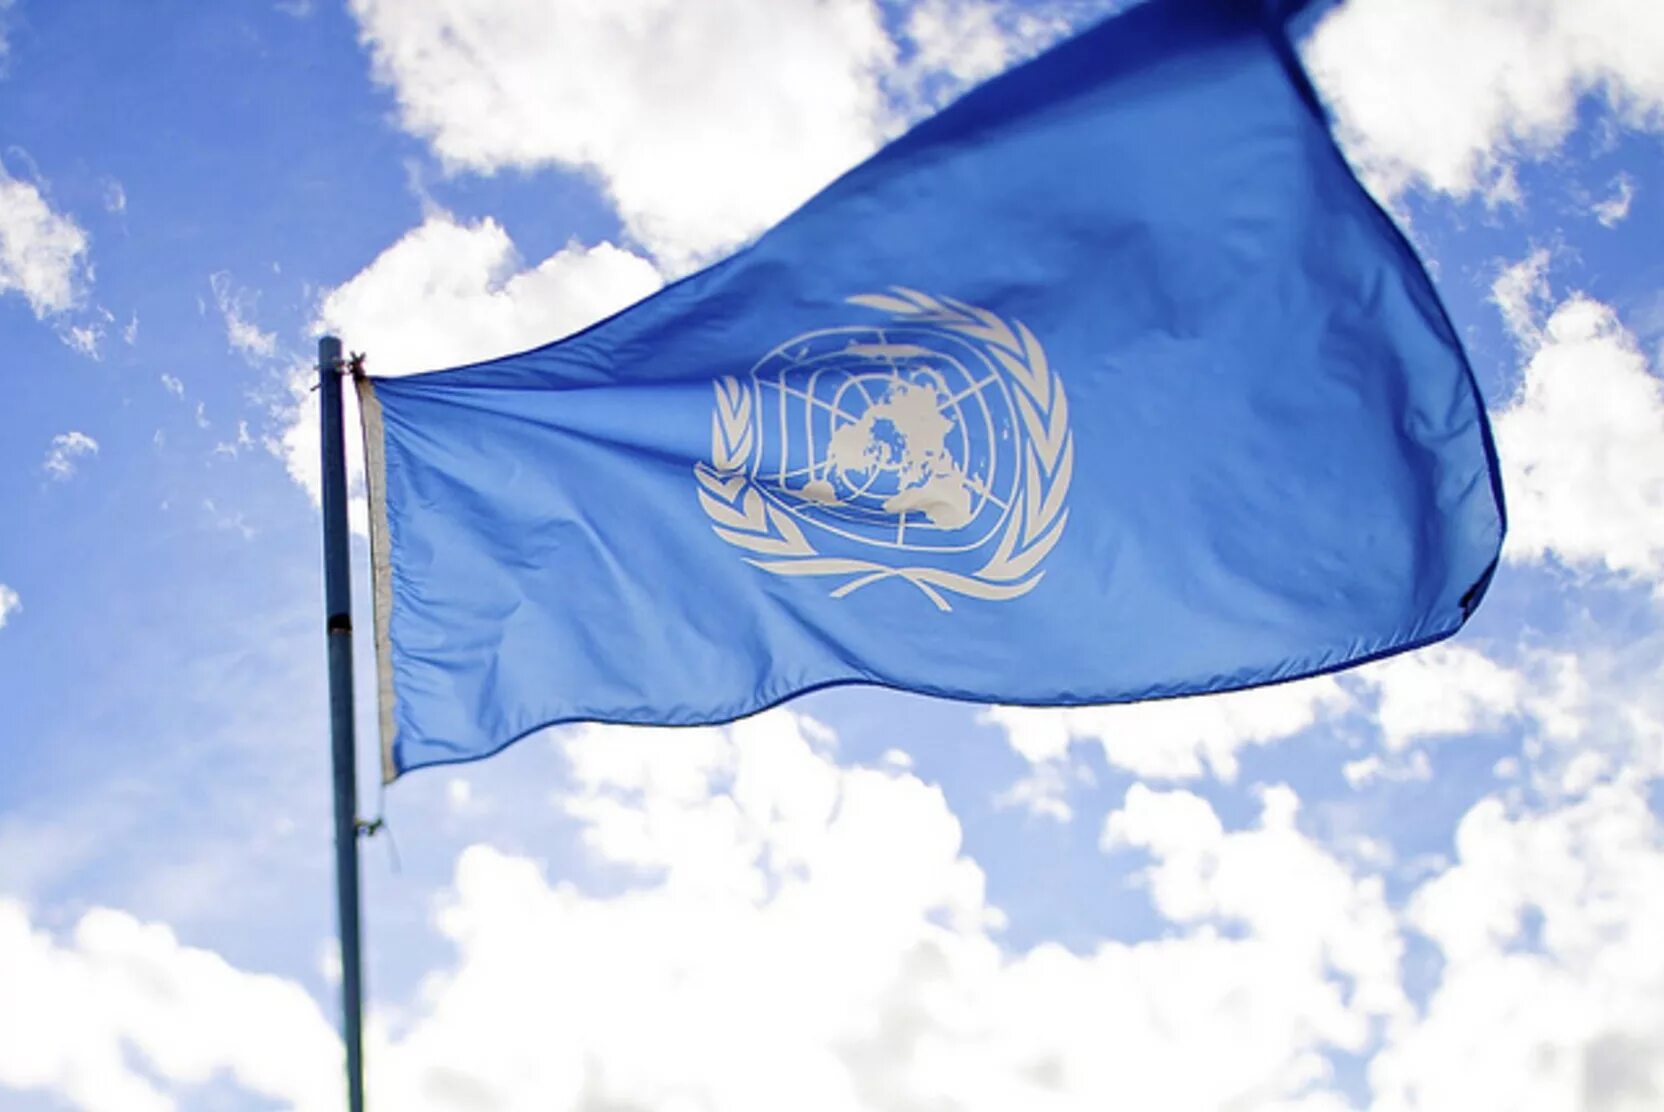 Организация оон в россии. Организация Объединённых наций. Флаг организации Объединенных наций. Организация Объединенных наций ООН флаг. Флаг миротворцев ООН.